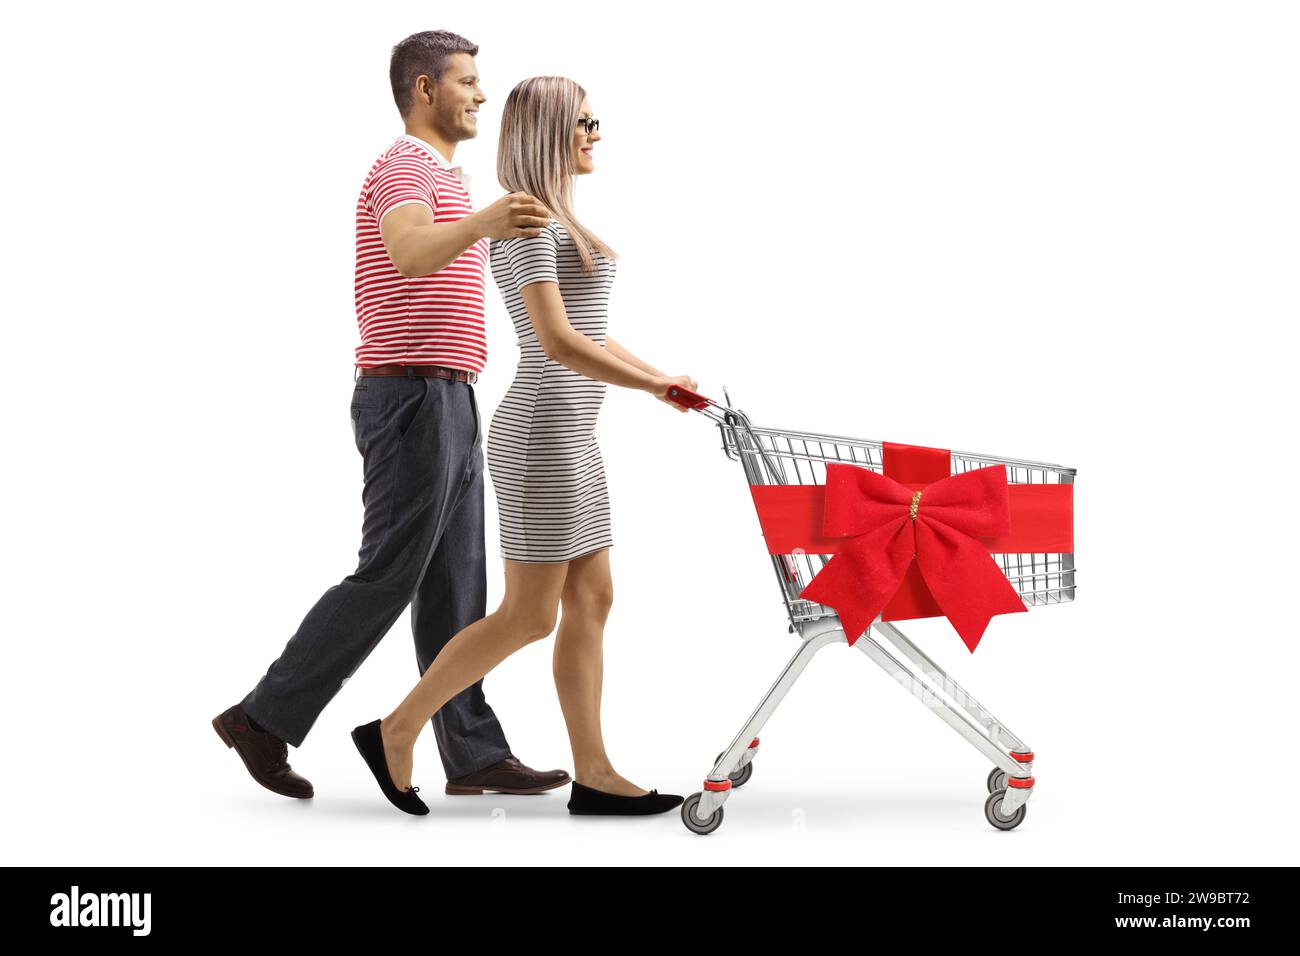 Profilaufnahme eines jungen Paares, das einen Einkaufswagen mit einer roten Schleife auf weißem Hintergrund läuft und schiebt Stockfoto